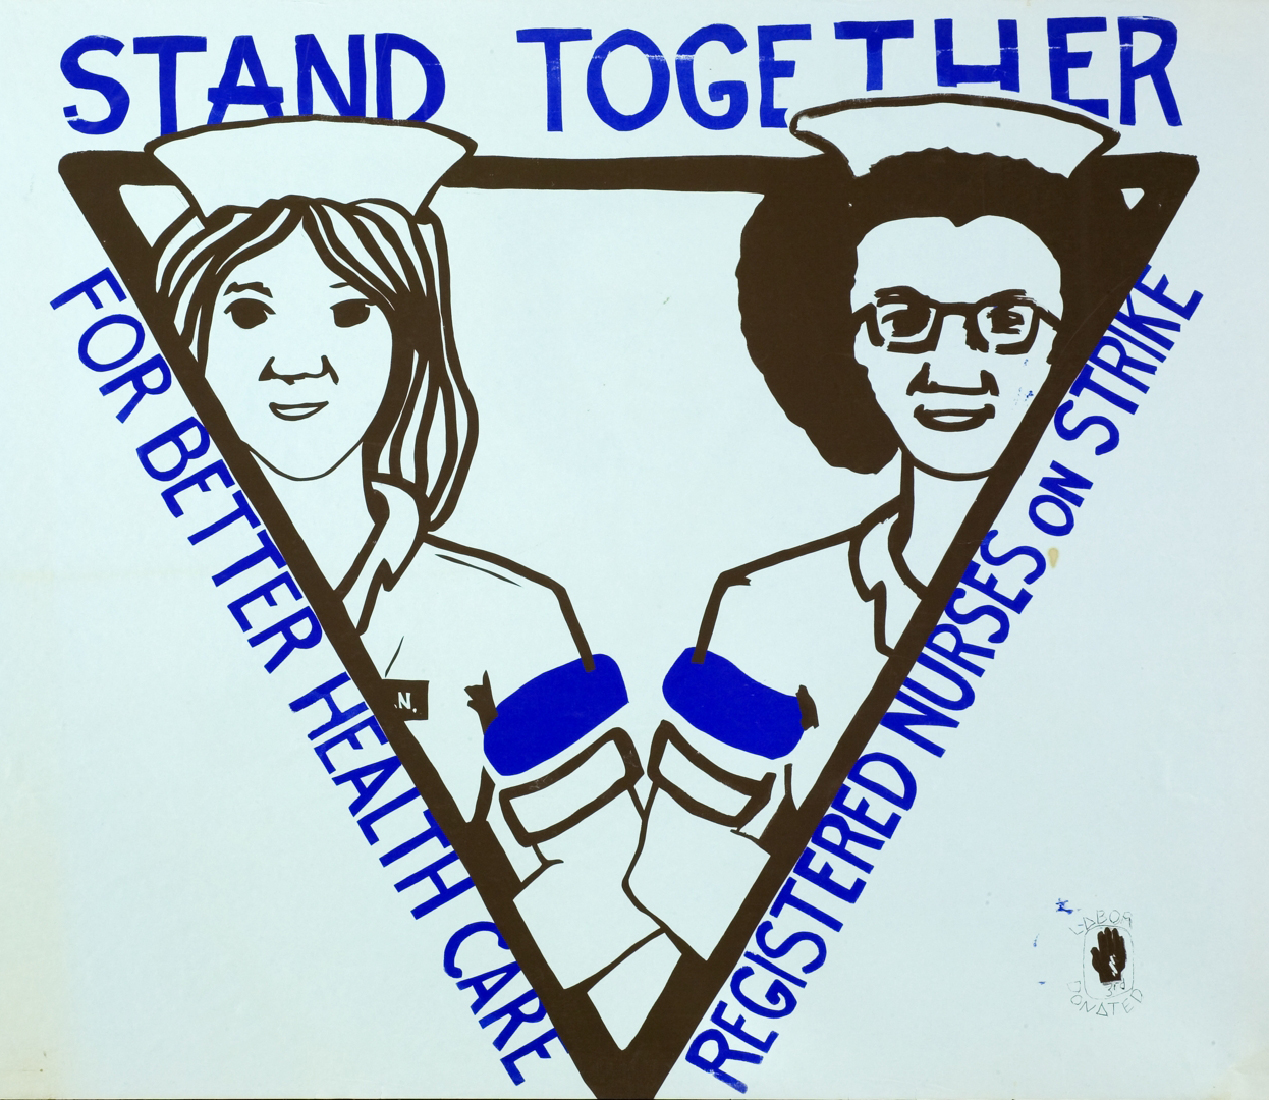 Stand together for better health care - Registered nurses on strike